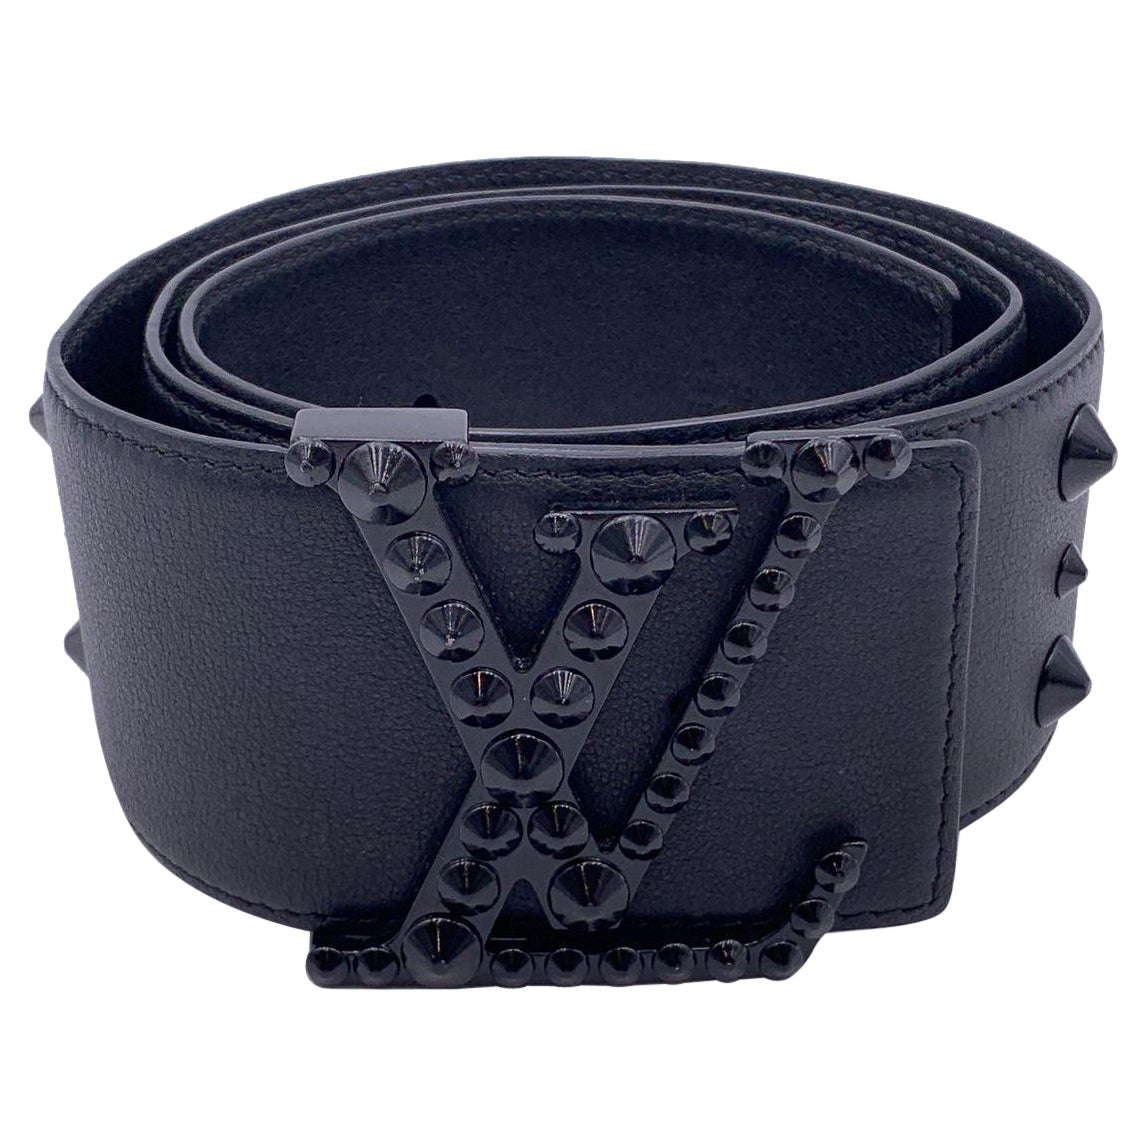 Louis Vuitton Black Leather Initiales Clous Wide Belt Size 85/34 M9602 For Sale